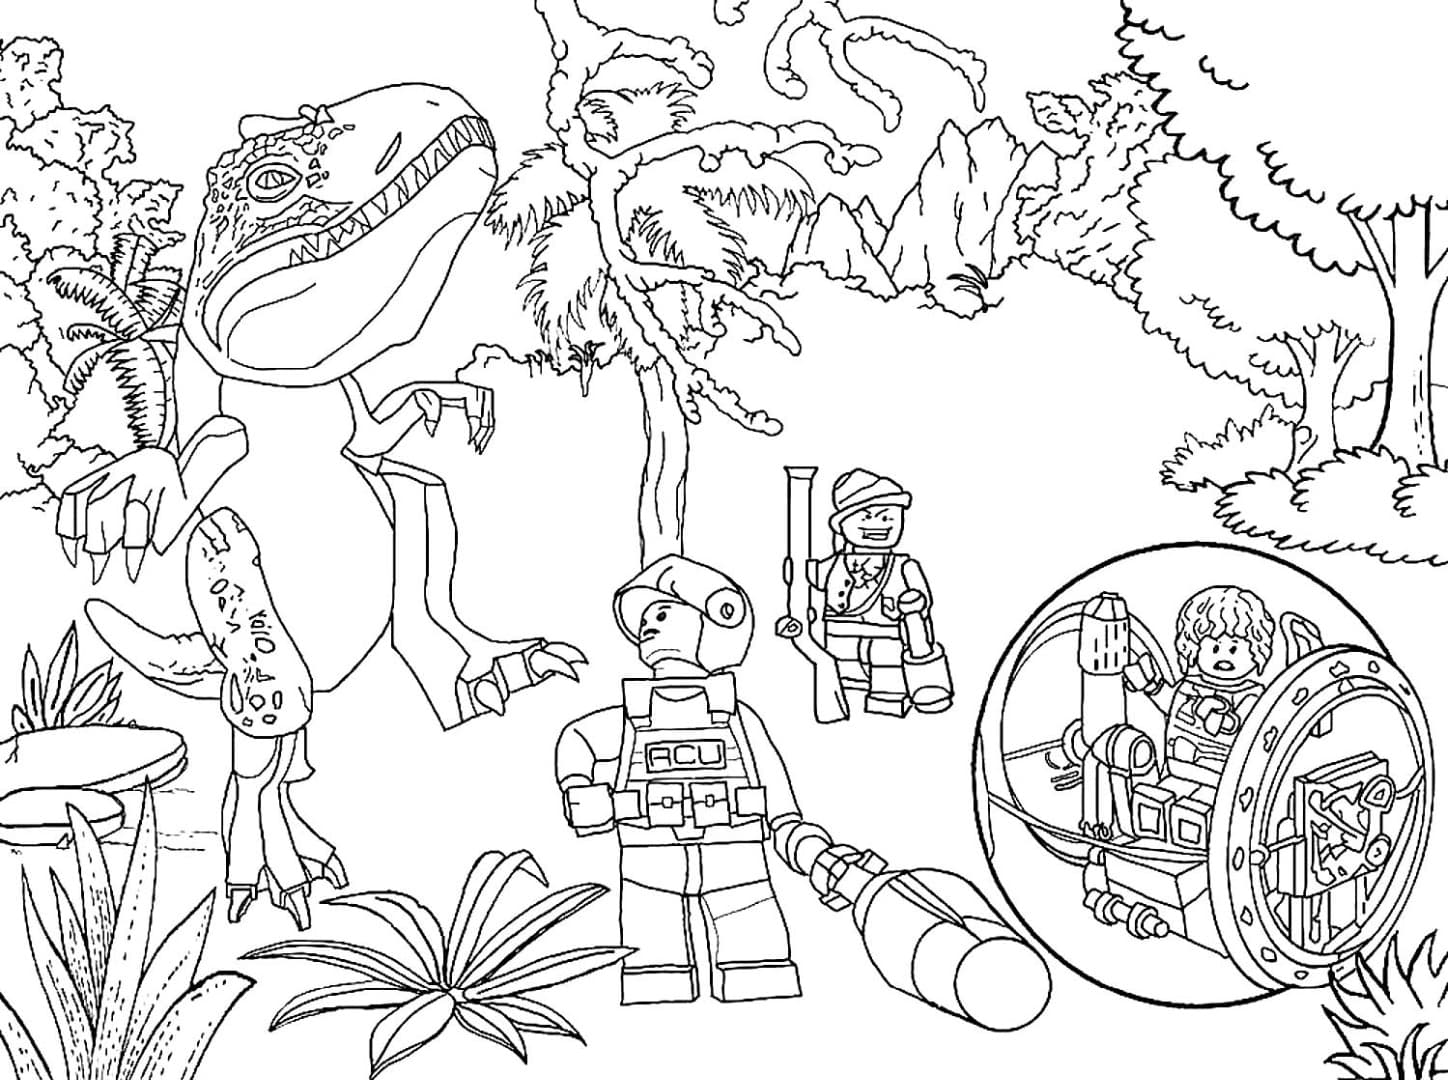 Раскраски Лего Динозавры. Раскраска 16